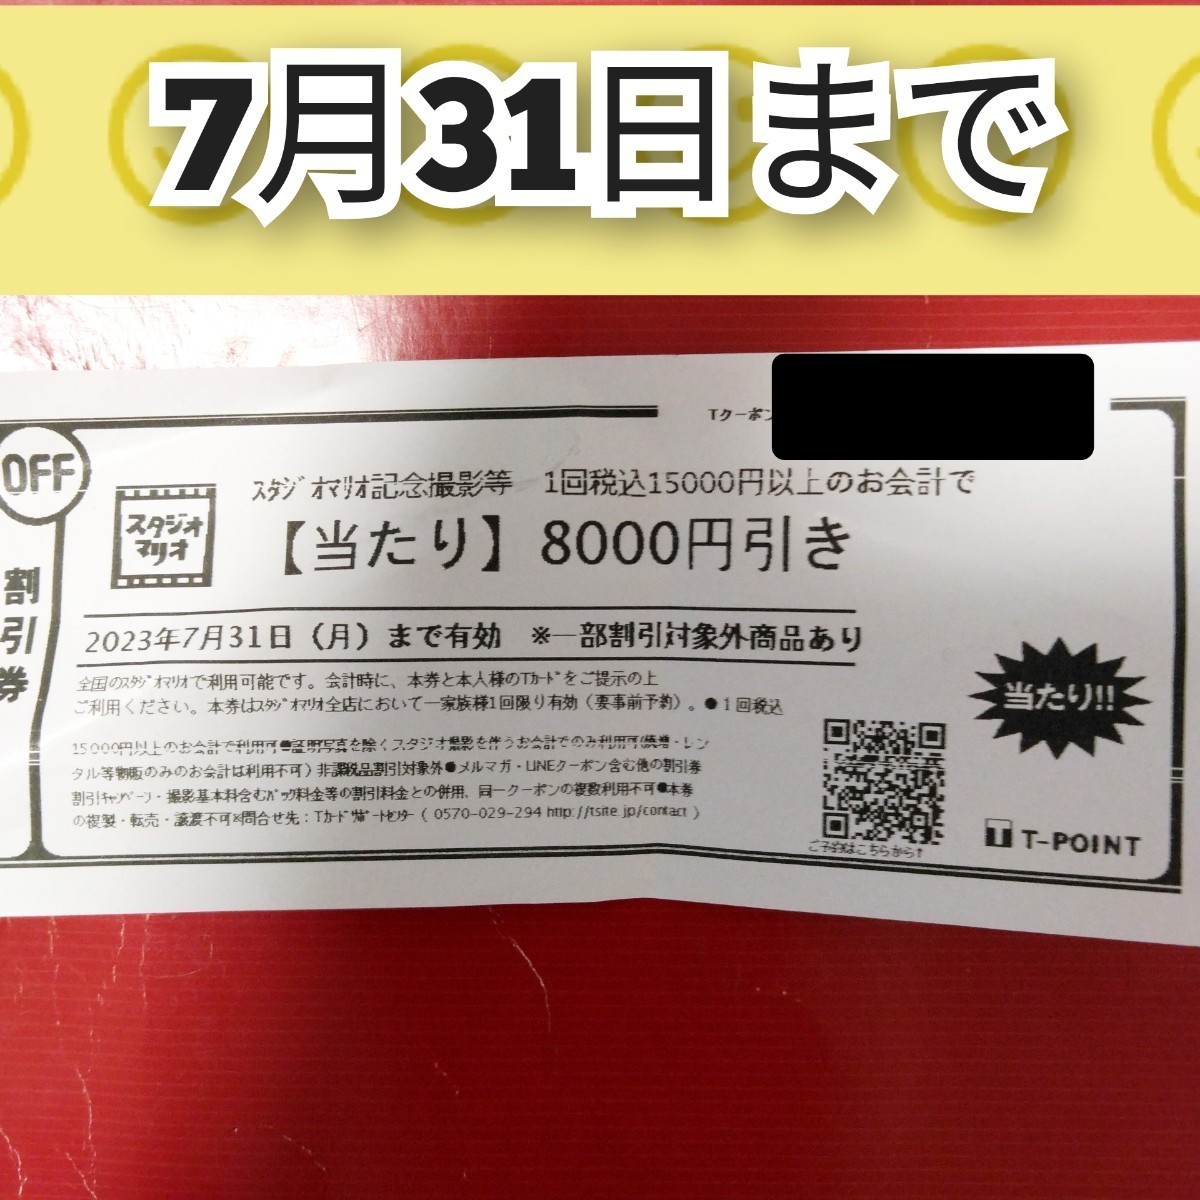 スタジオマリオ クーポン 8000円 割引券